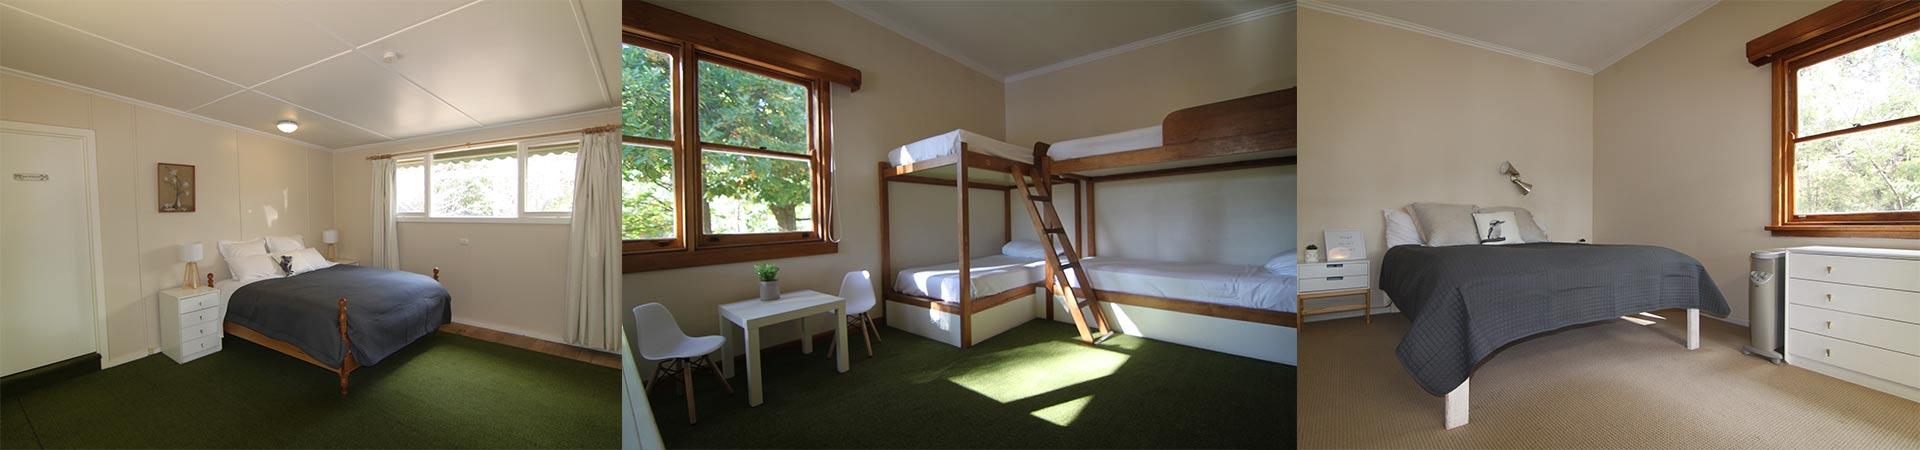 accommodation 